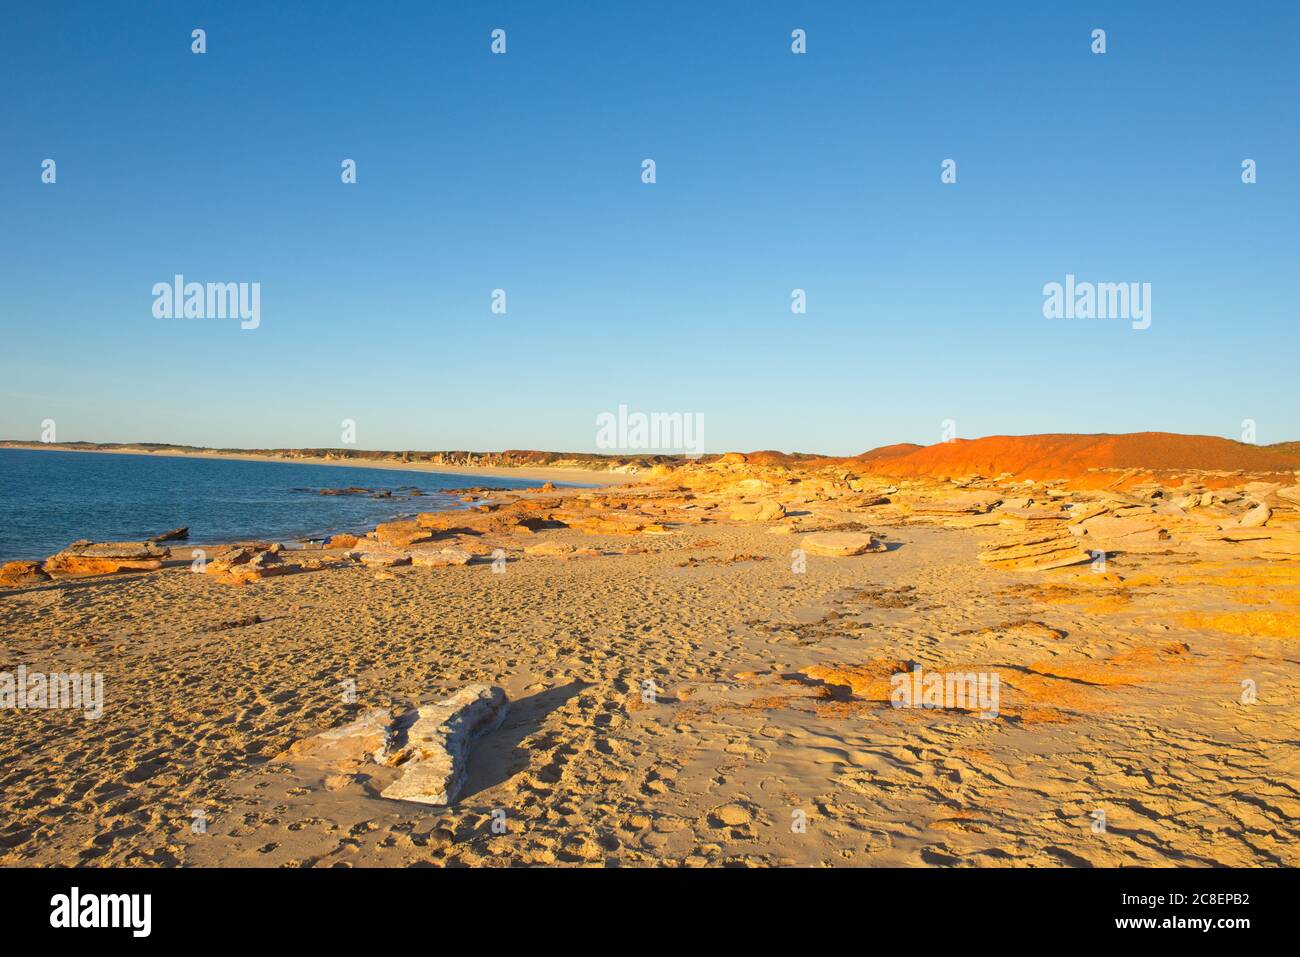 Malerischer Panoramablick auf die abgelegene Kimberley-Küste in Western Australia, mit unberührtem Strand, ruhigem Meer und sonnigem blauen Sonnenuntergang Himmel als Hintergrund und Cop Stockfoto